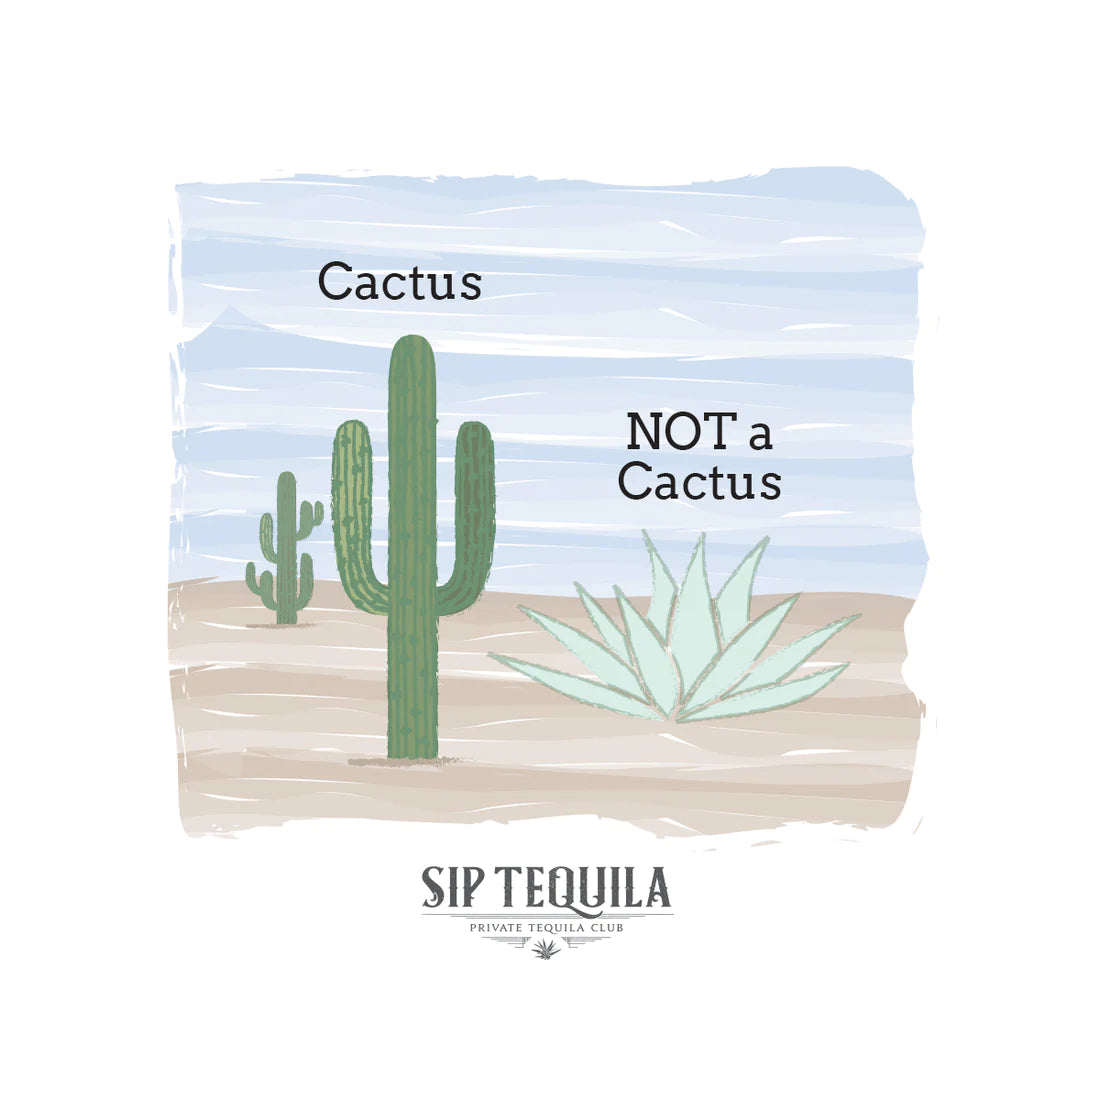 Cactus___Not_a_Cactus_1100x_jpg_10c2a6b7-048c-4a51-8ae3-dd195f4eec61